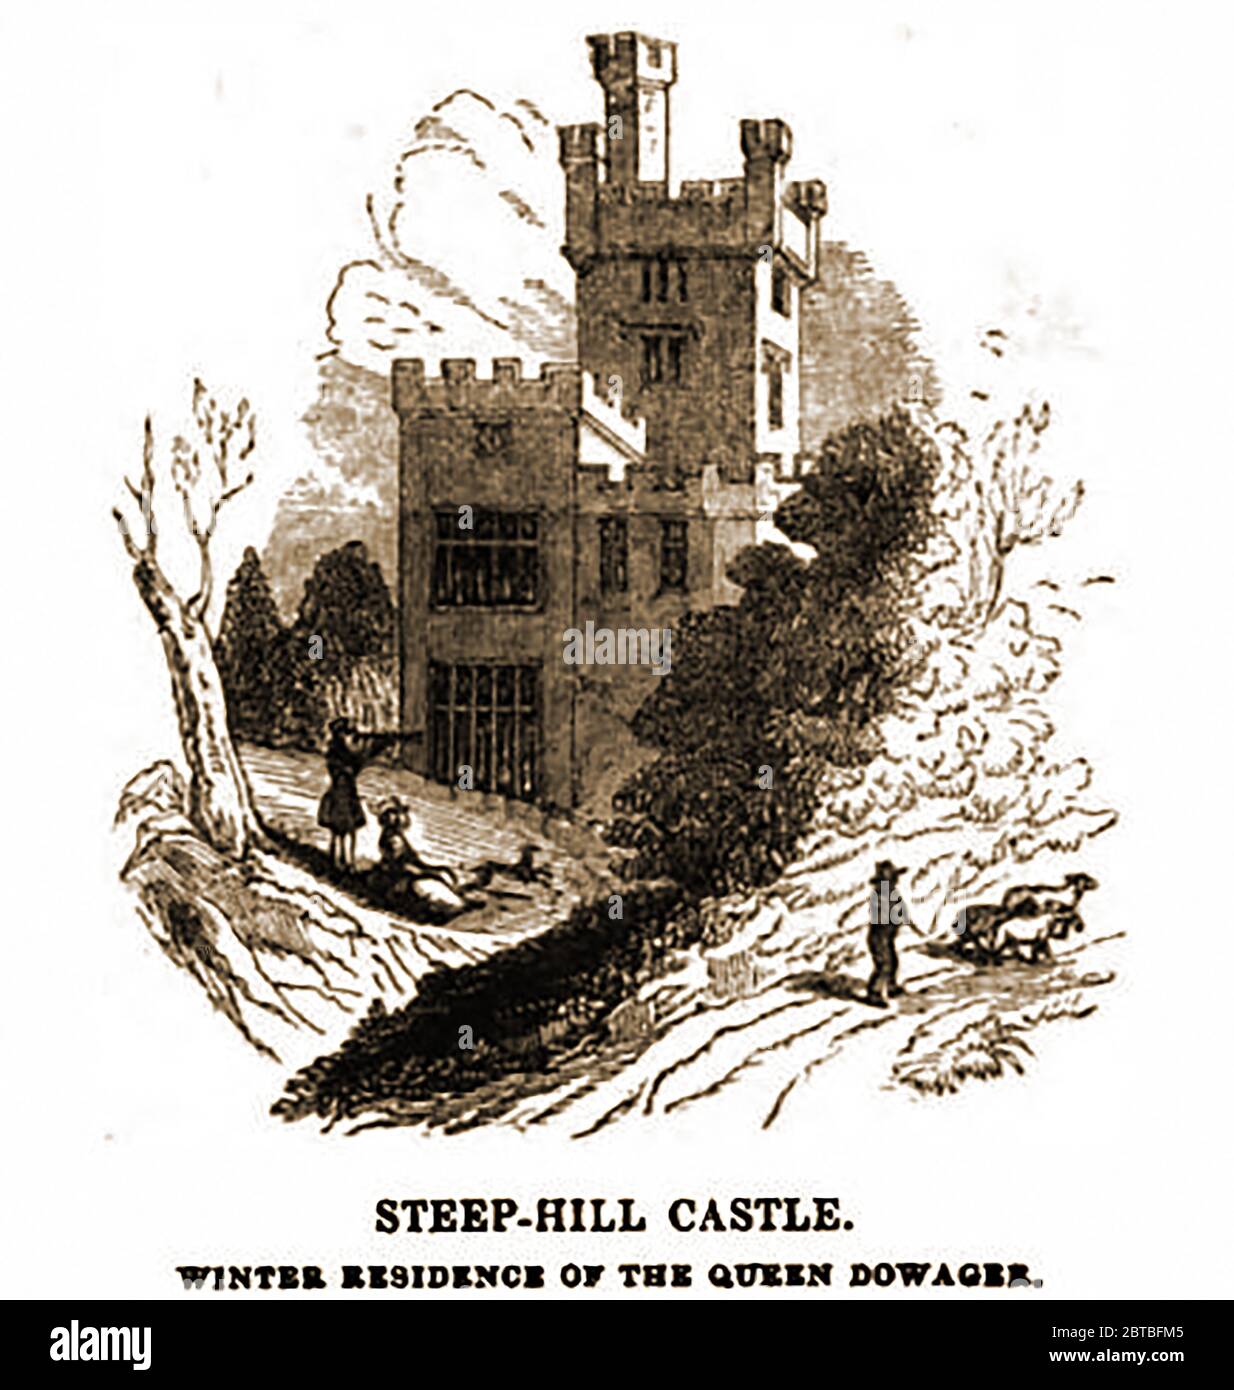 Ripido castello collinare prima che divenne una rovina e fu demolito (1842). Steephill è un borgo vicino a Ventnor, Isola di Wight, e la posizione di un ex residenza vittoriana di campagna con un castello-come palazzo che è stato demolito per costruire bungalow moderni negli anni '60. La costruzione del Castello, che ha impiegato due anni per essere completata, ha avuto inizio nel 1833. Quando demolito si è trovato che molte delle incisioni nel castello erano in effetti getti e che la quercia utilizzata nella sua costruzione era in realtà dissimulata. Alcuni hanno considerato il castello come una follia. Foto Stock